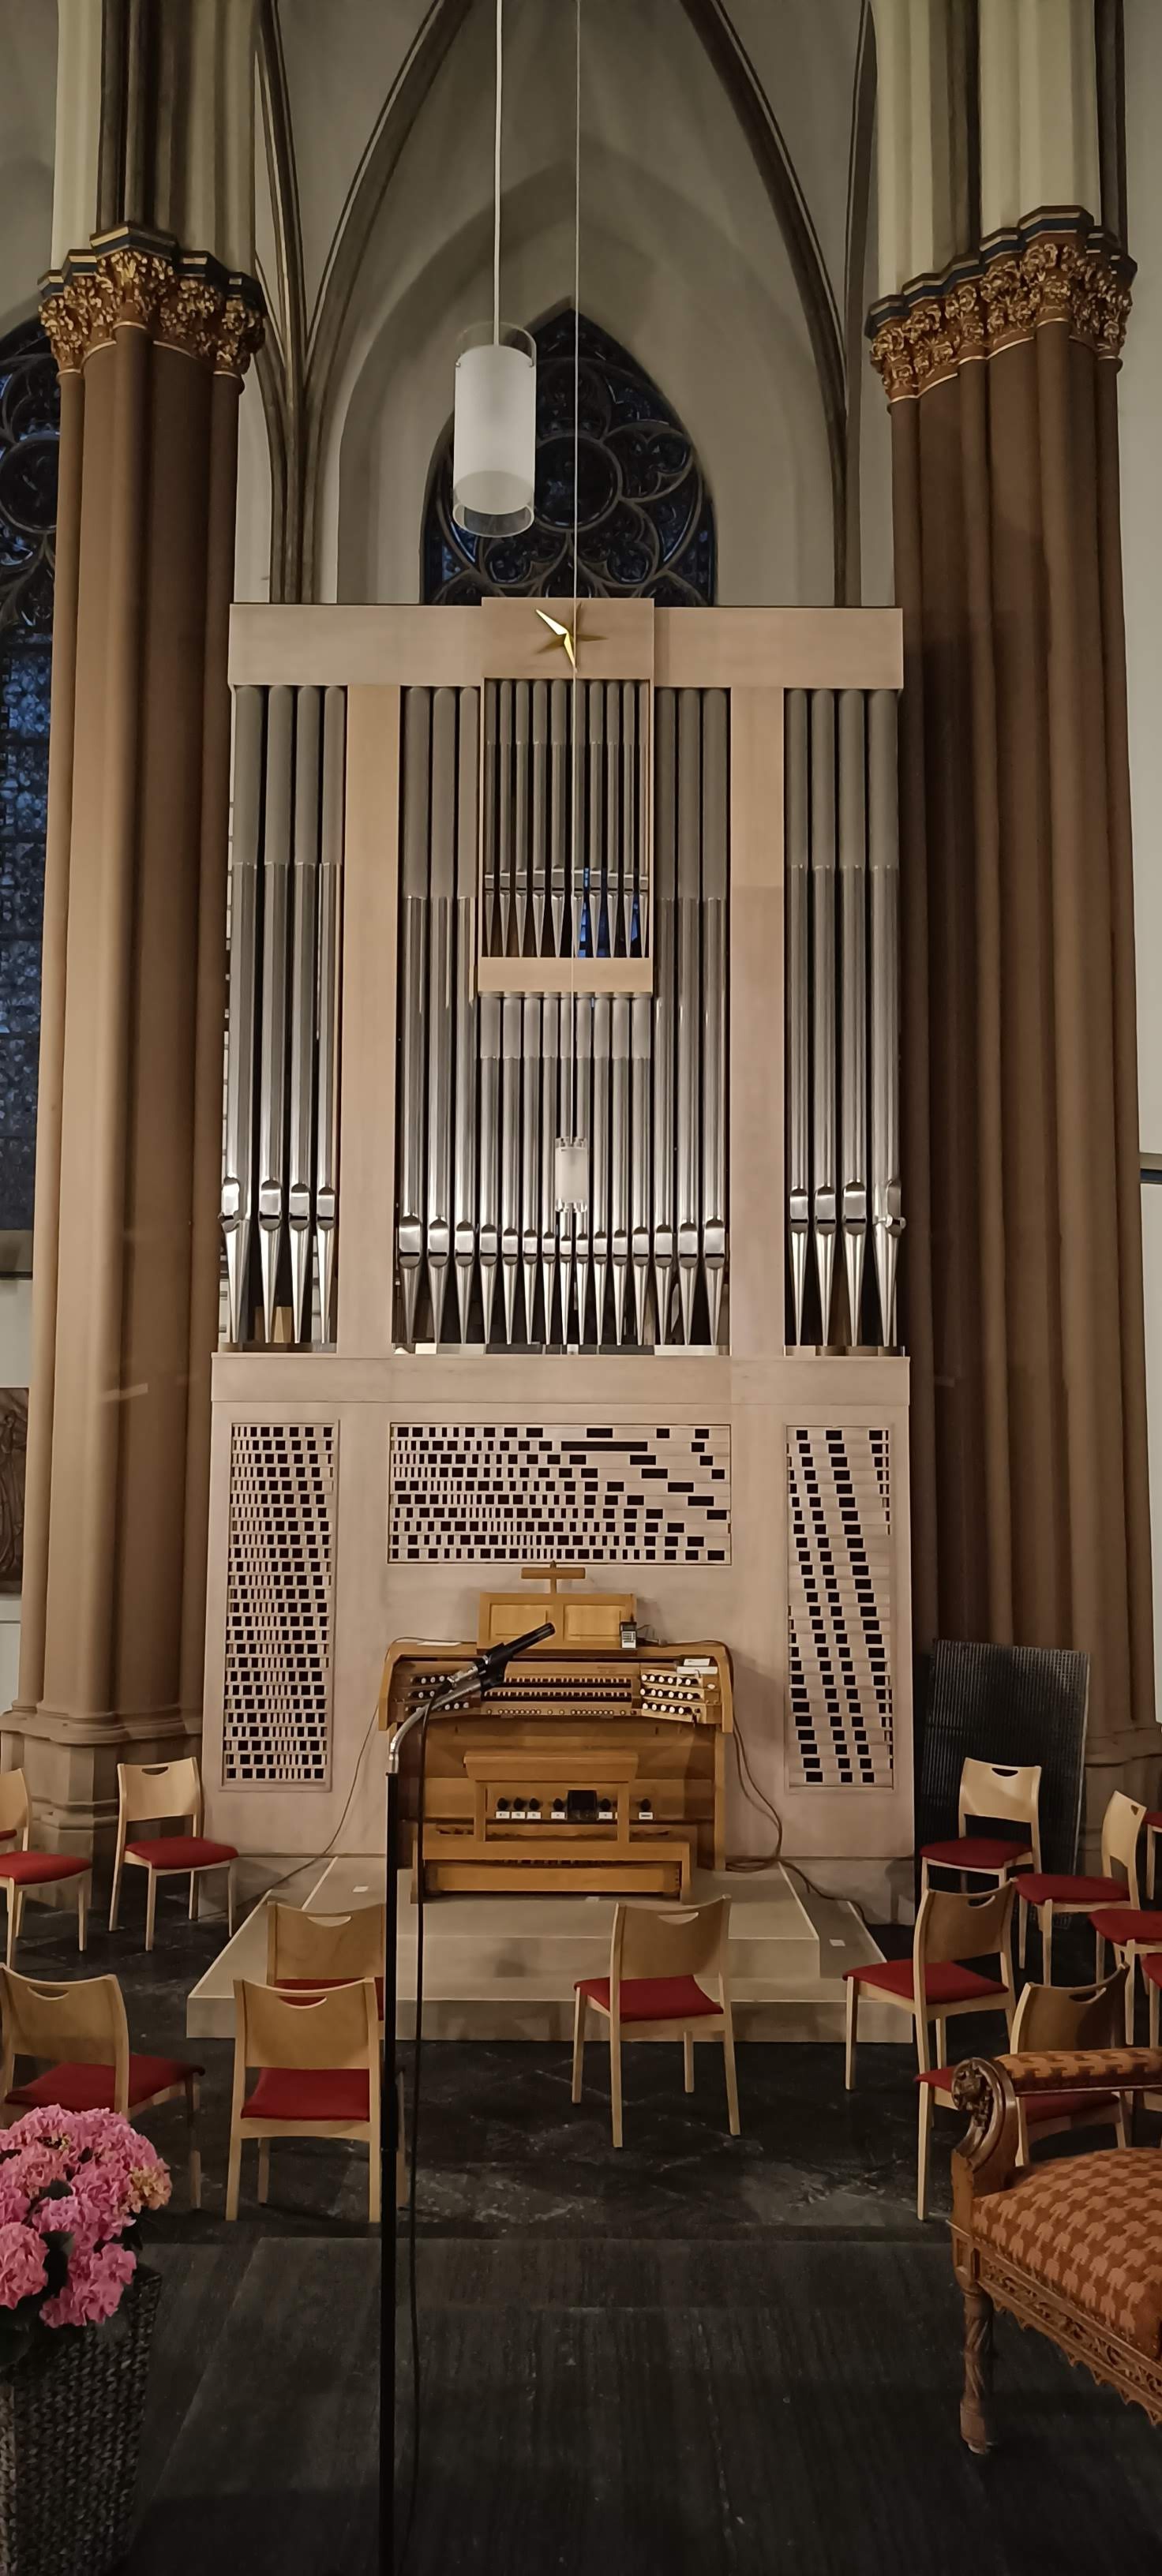 Stockmann-Orgel in St. Johannes (c) M. Neef